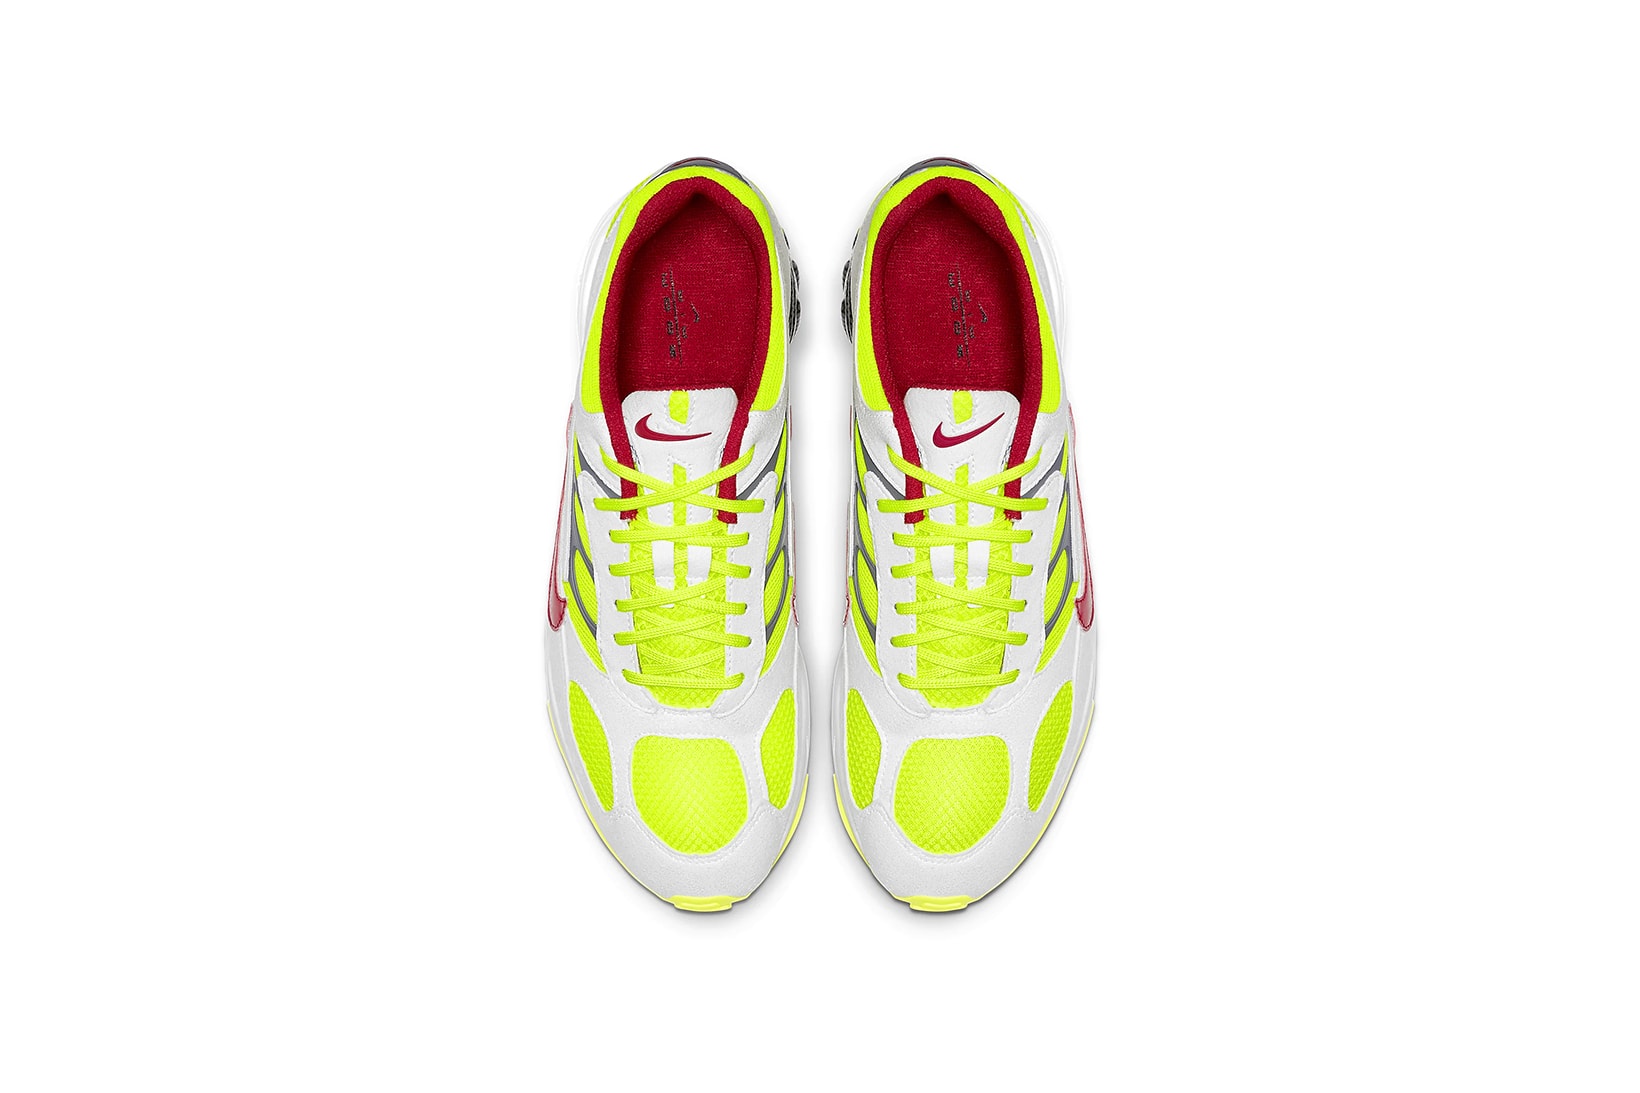 nike air ghost racer original color white neon yellow dark grey atom red sneakers sneakerhead shoes footwear